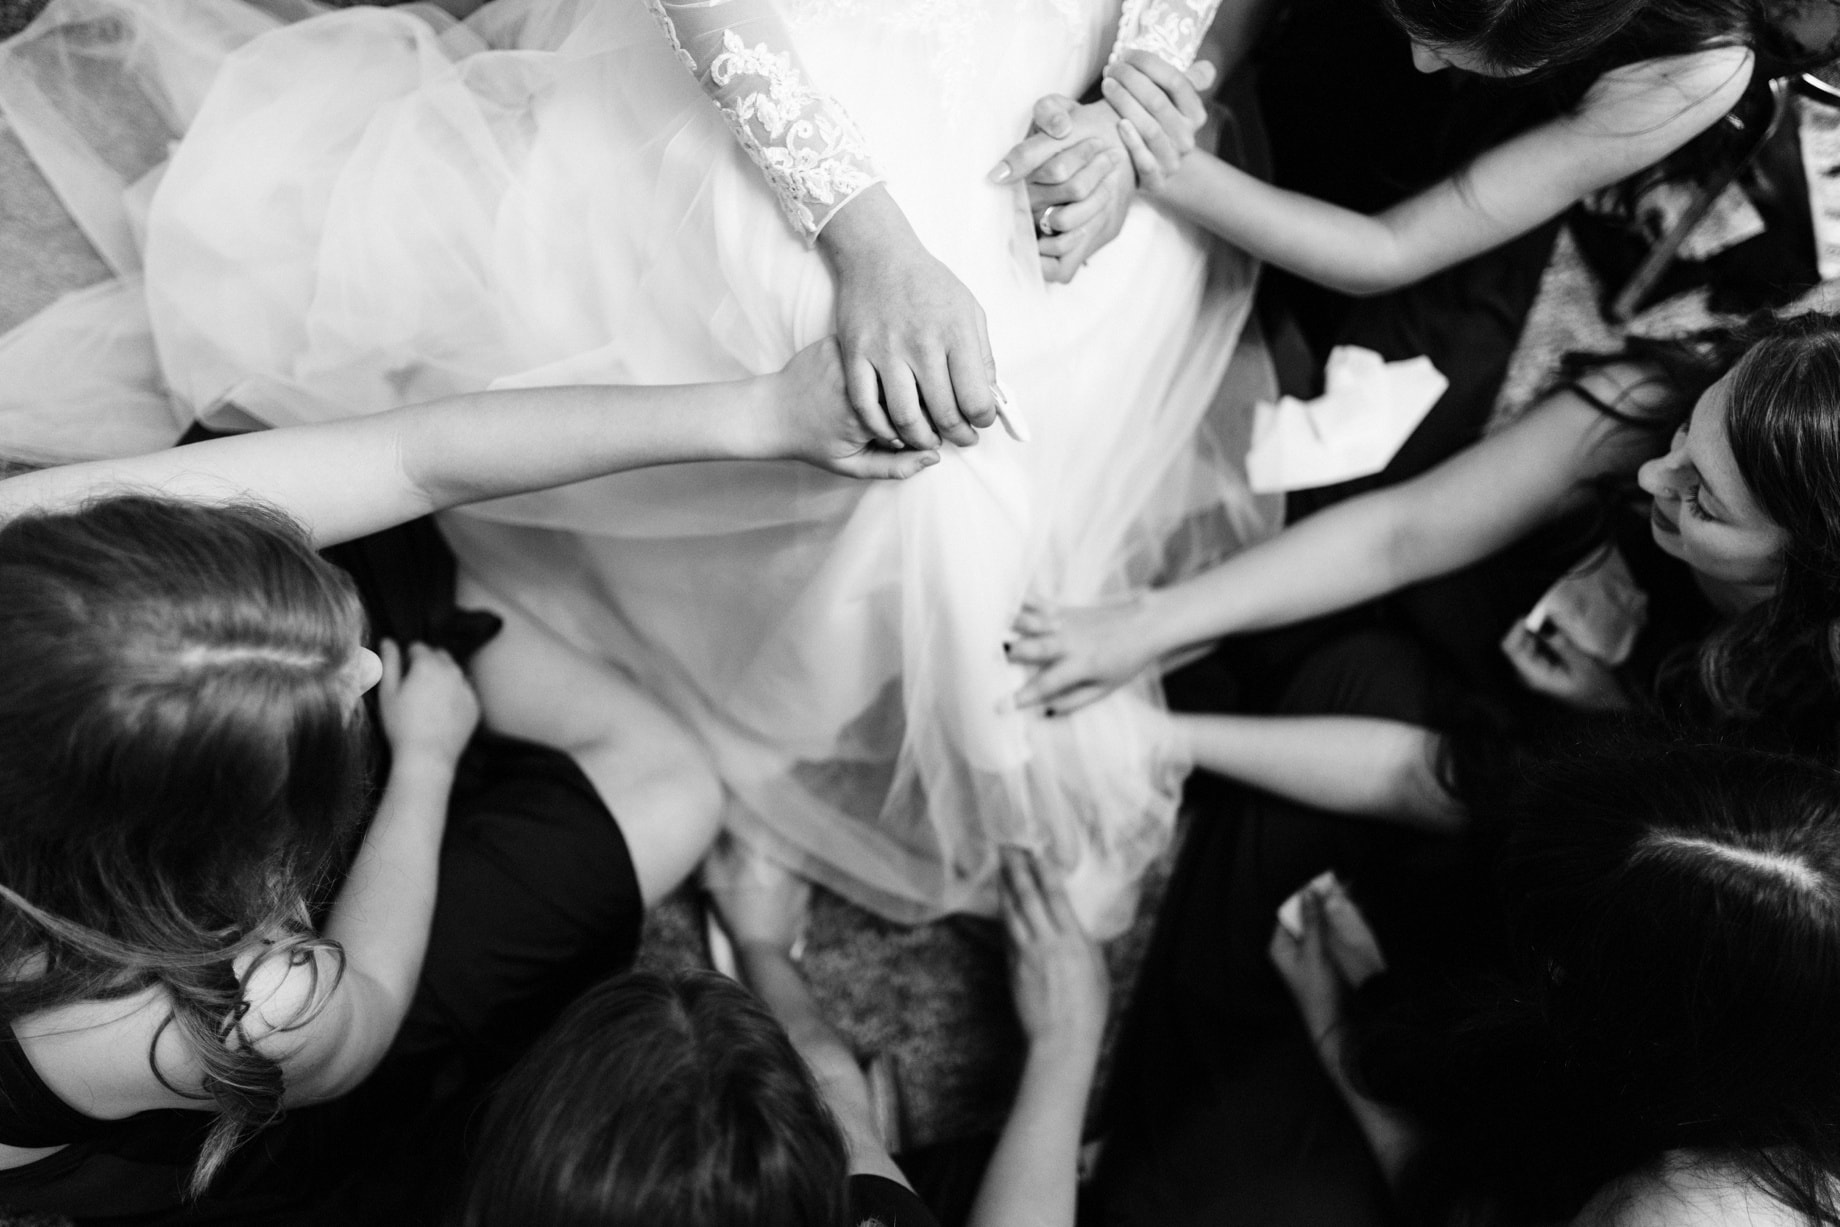 Detroit wedding photographer Heather Jowett presents her Best of 2018